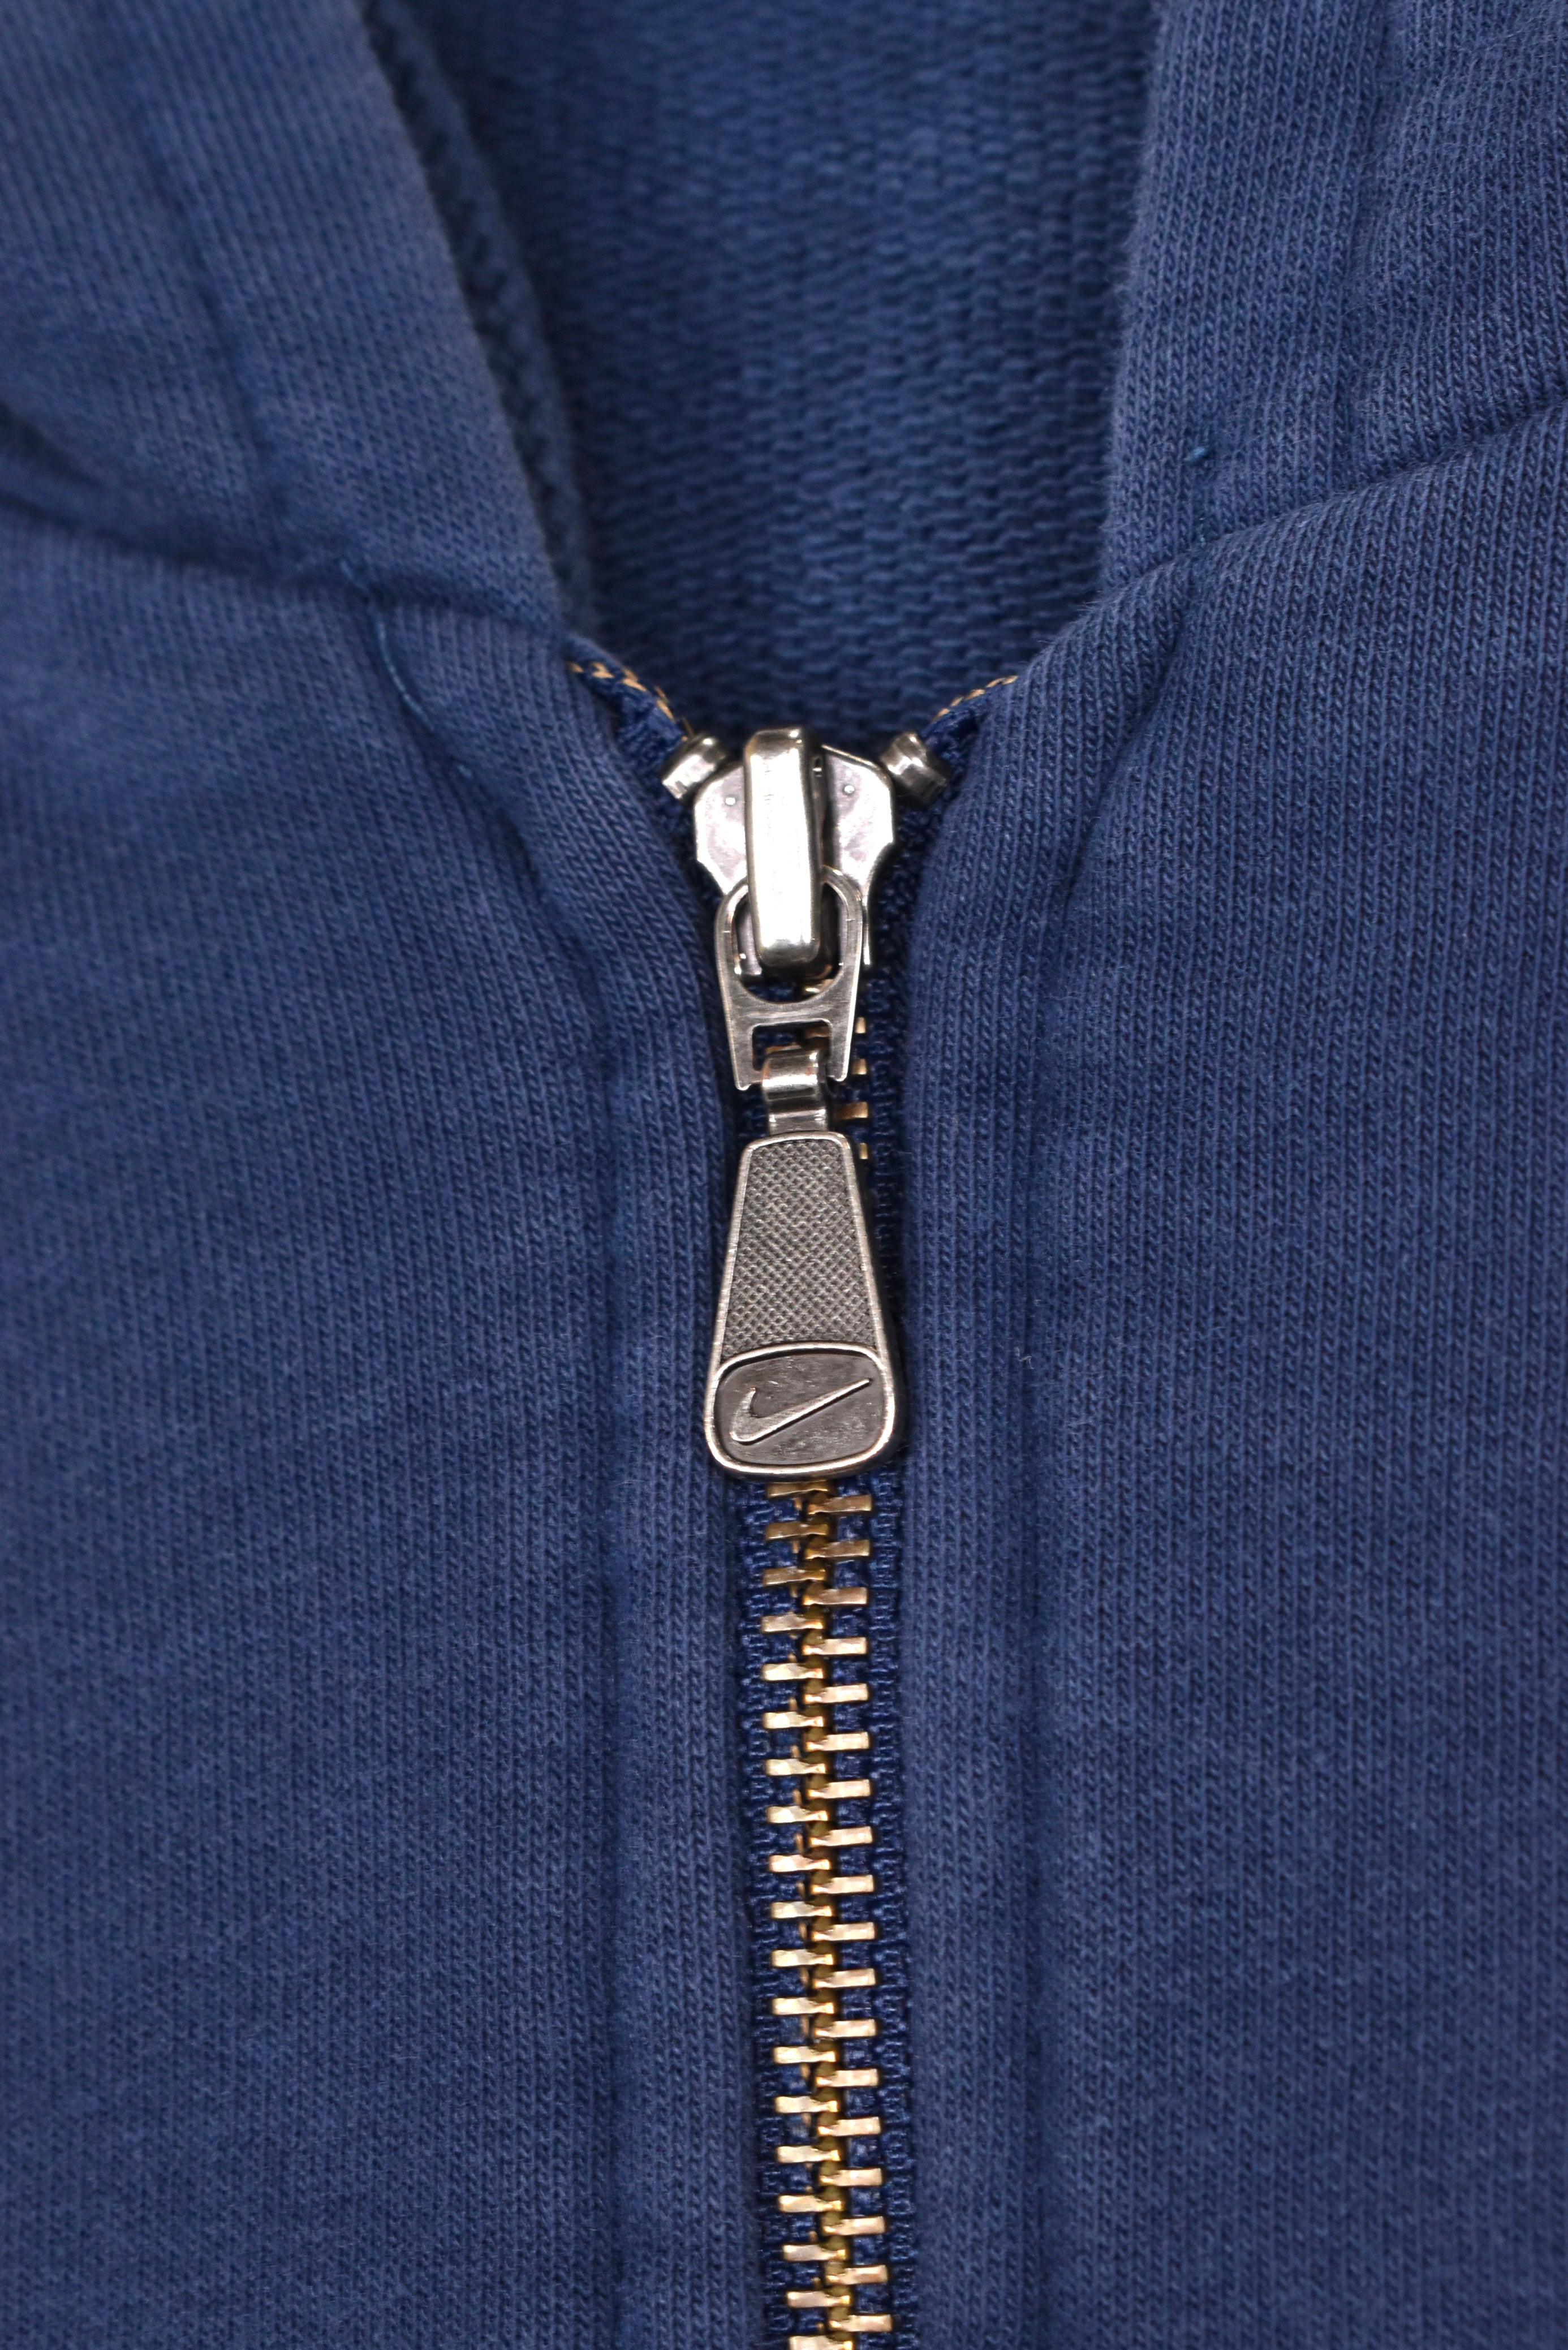 Vintage Nike hoodie, navy blue embroidered sweatshirt - AU XL NIKE